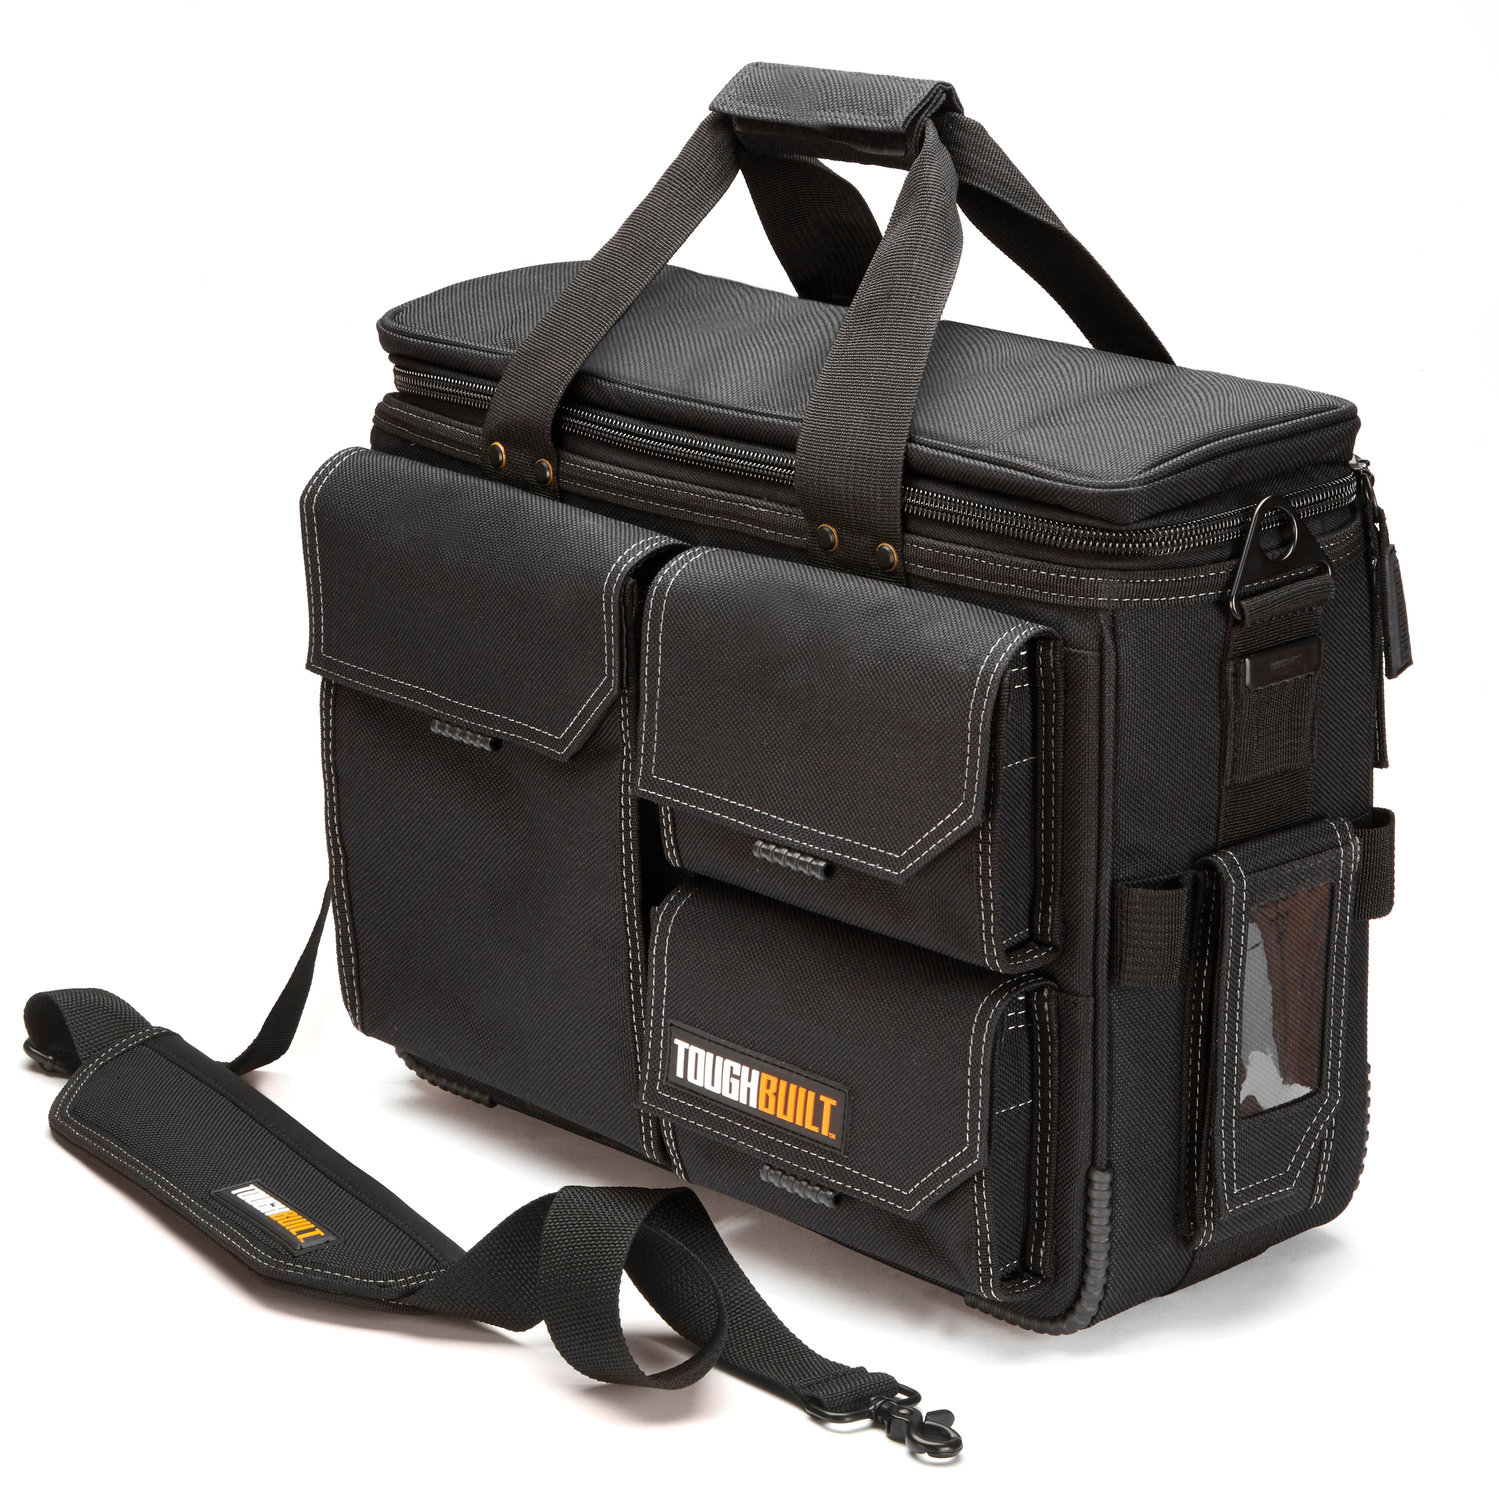 Quick Access Laptop Bag Shoulder Strap Large — TOUGHBUILT